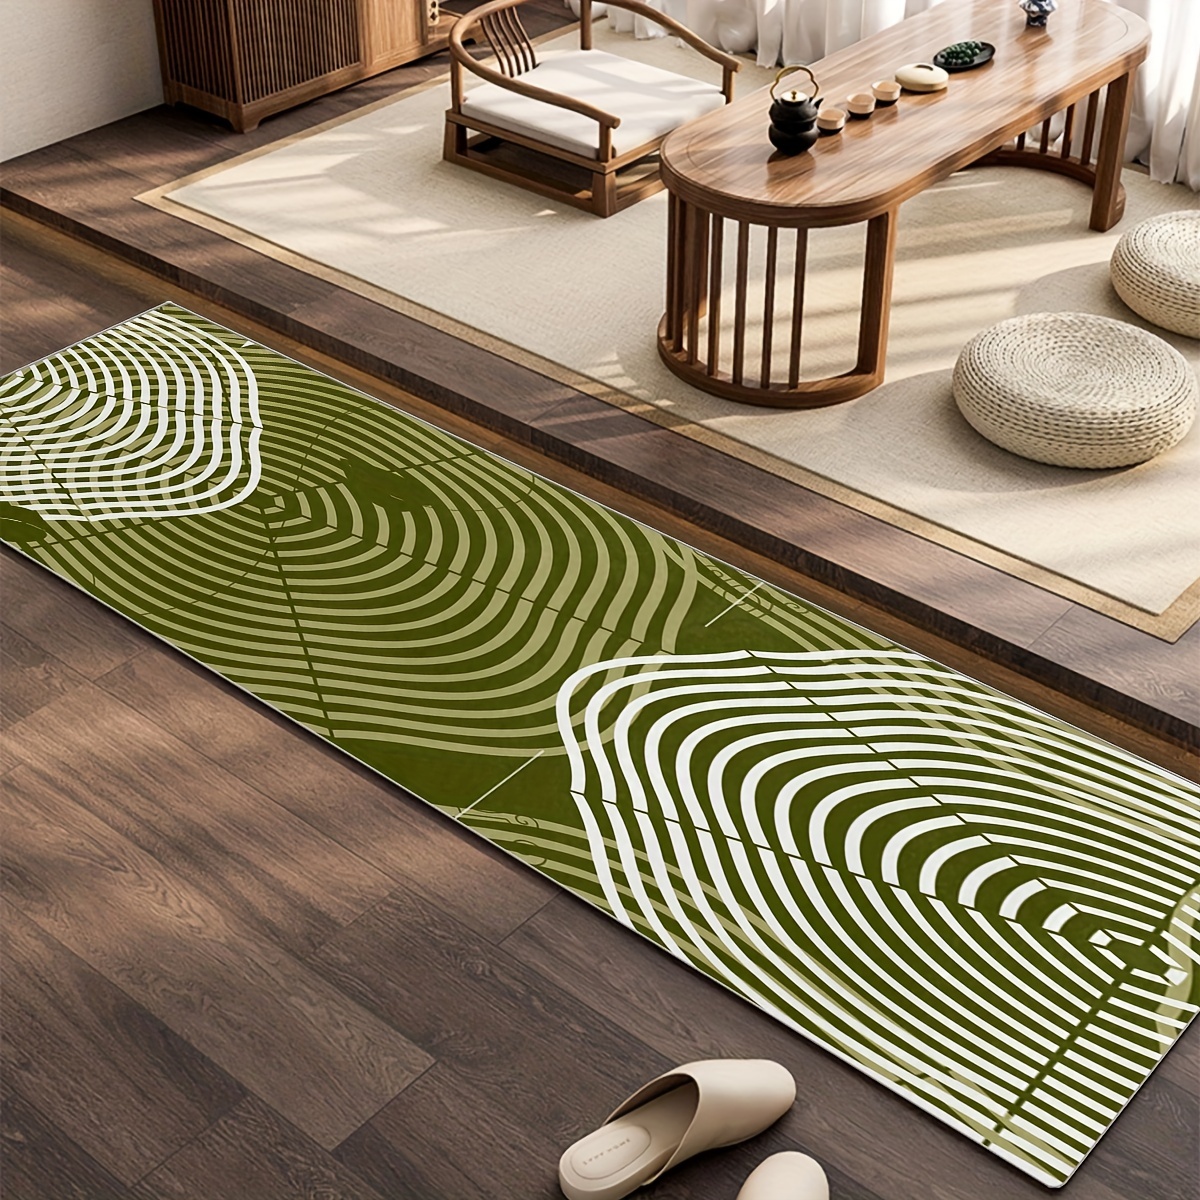  Alfombras para suelo de cocina, alfombra abstracta